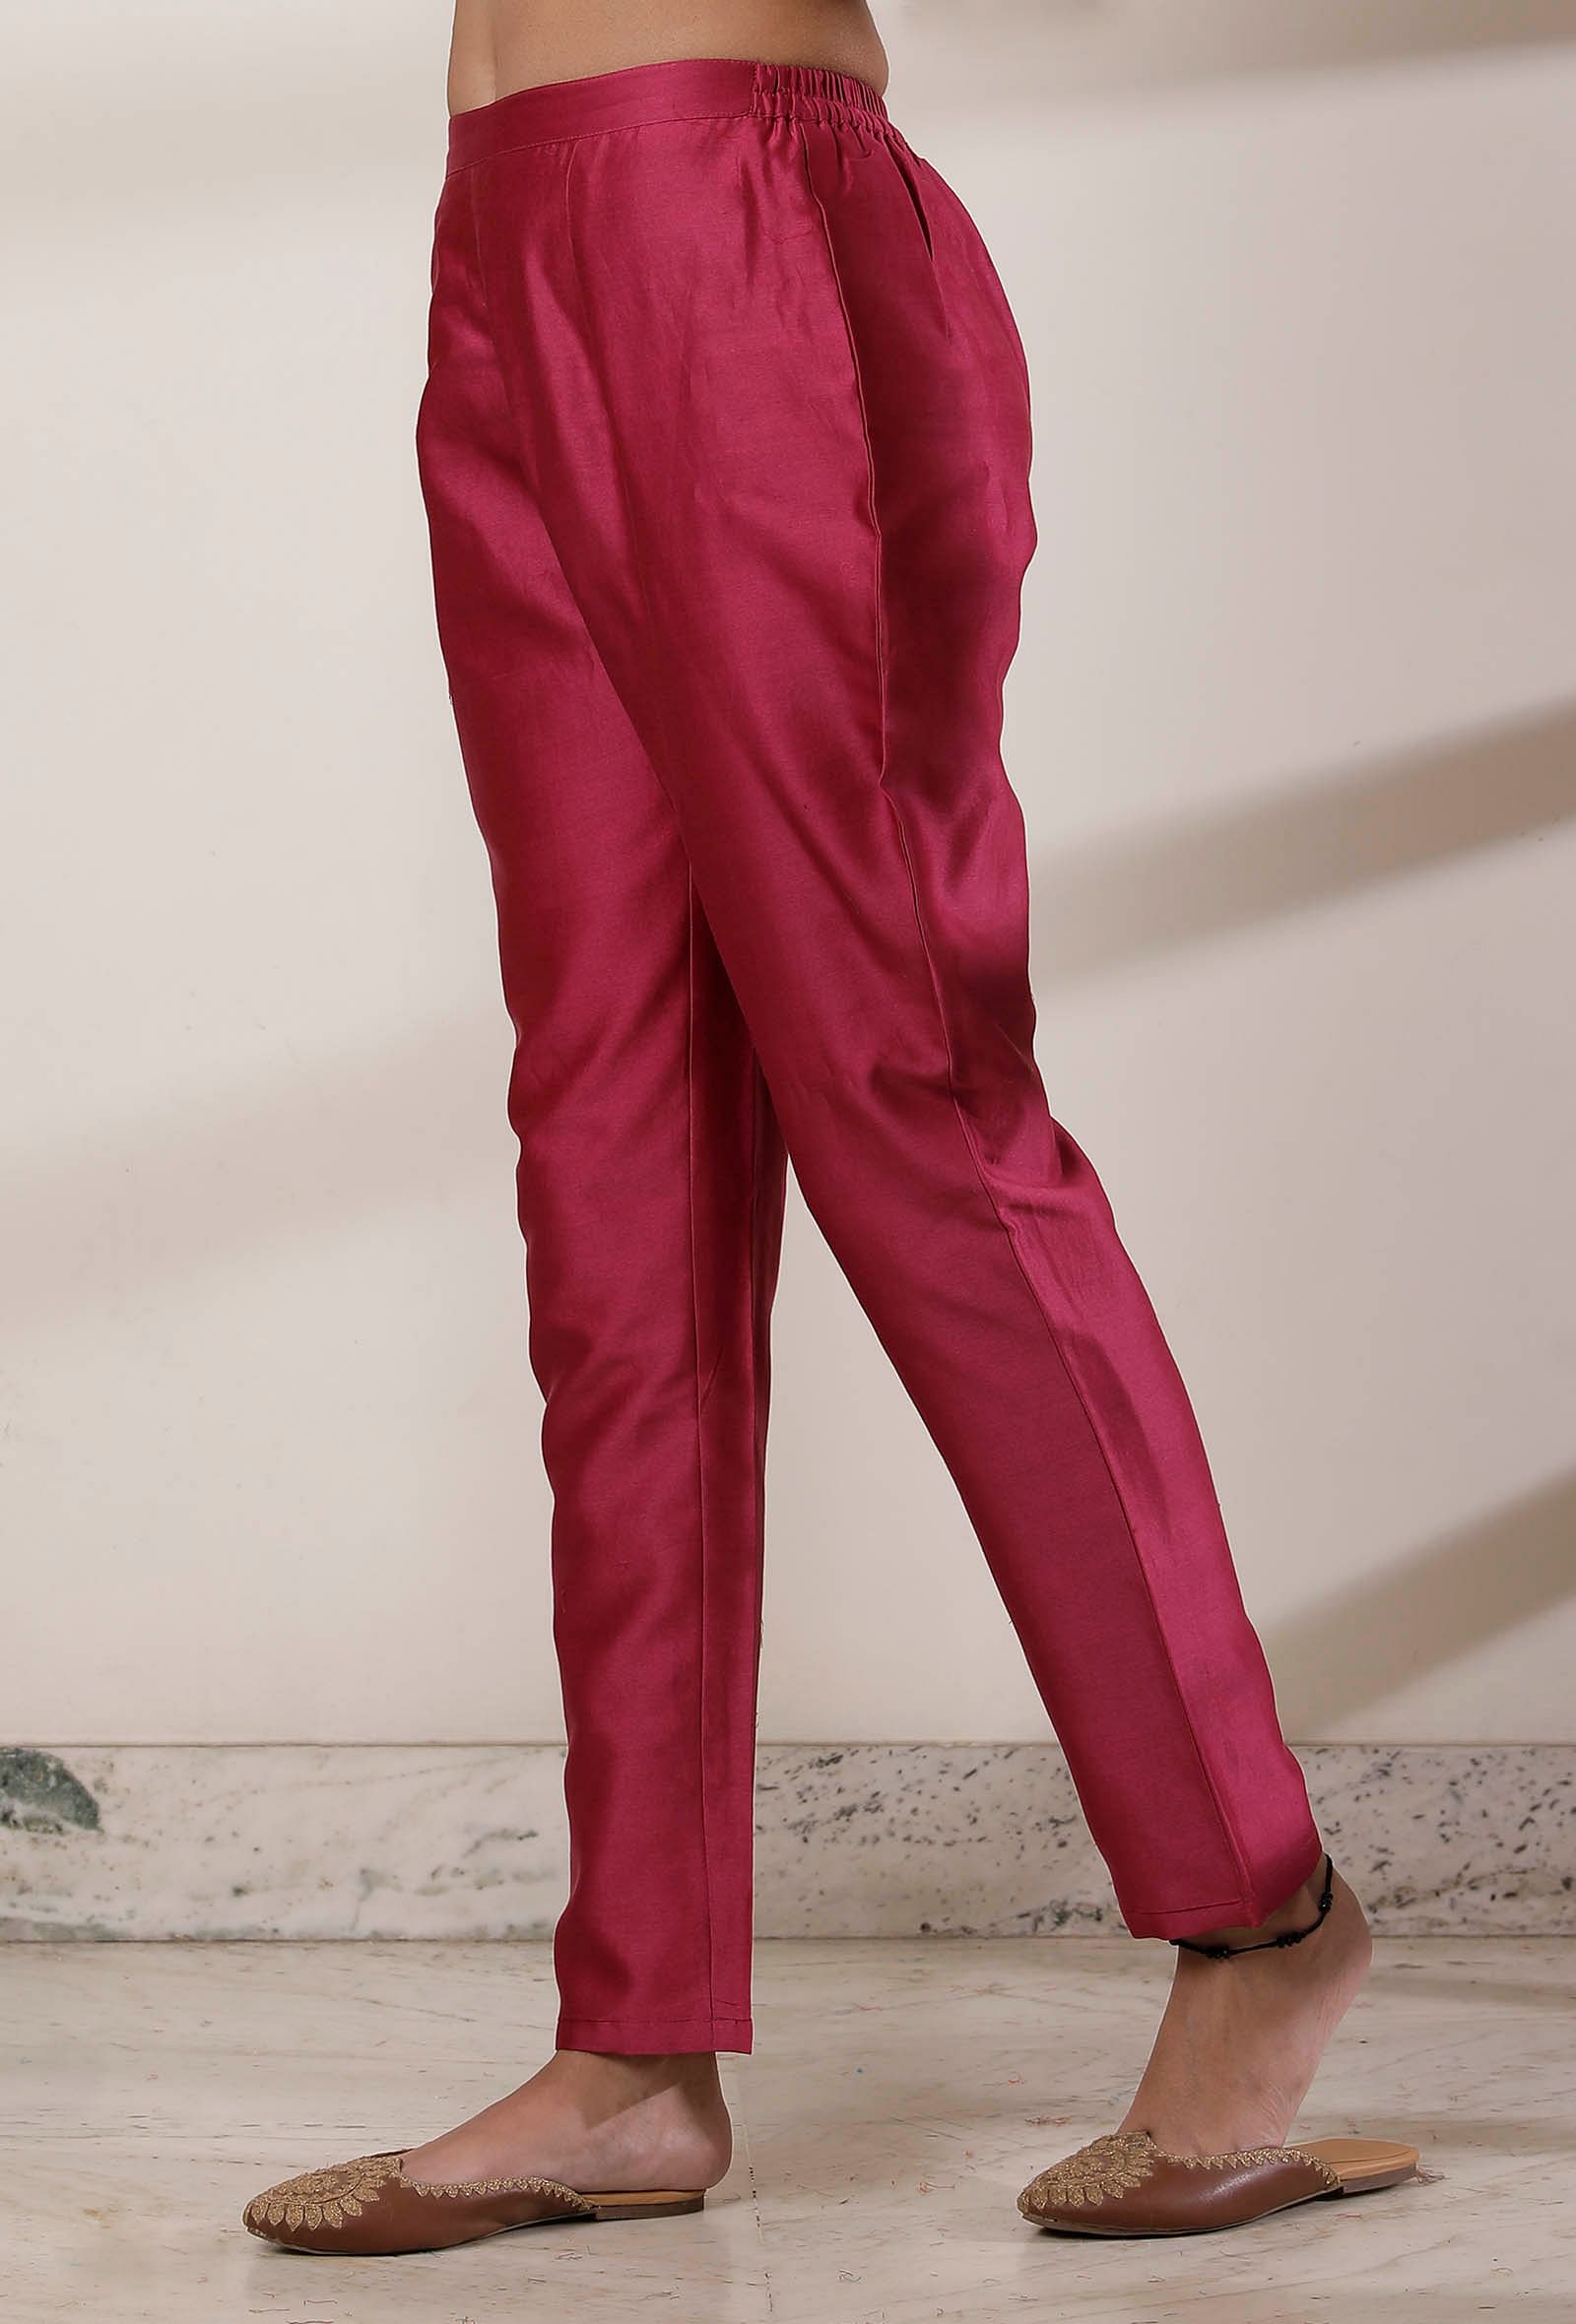 Men Trousers Formal Baffalo Plaid Slim Fit Long Casual Office Wear Suit Pencil  Pants | Wish